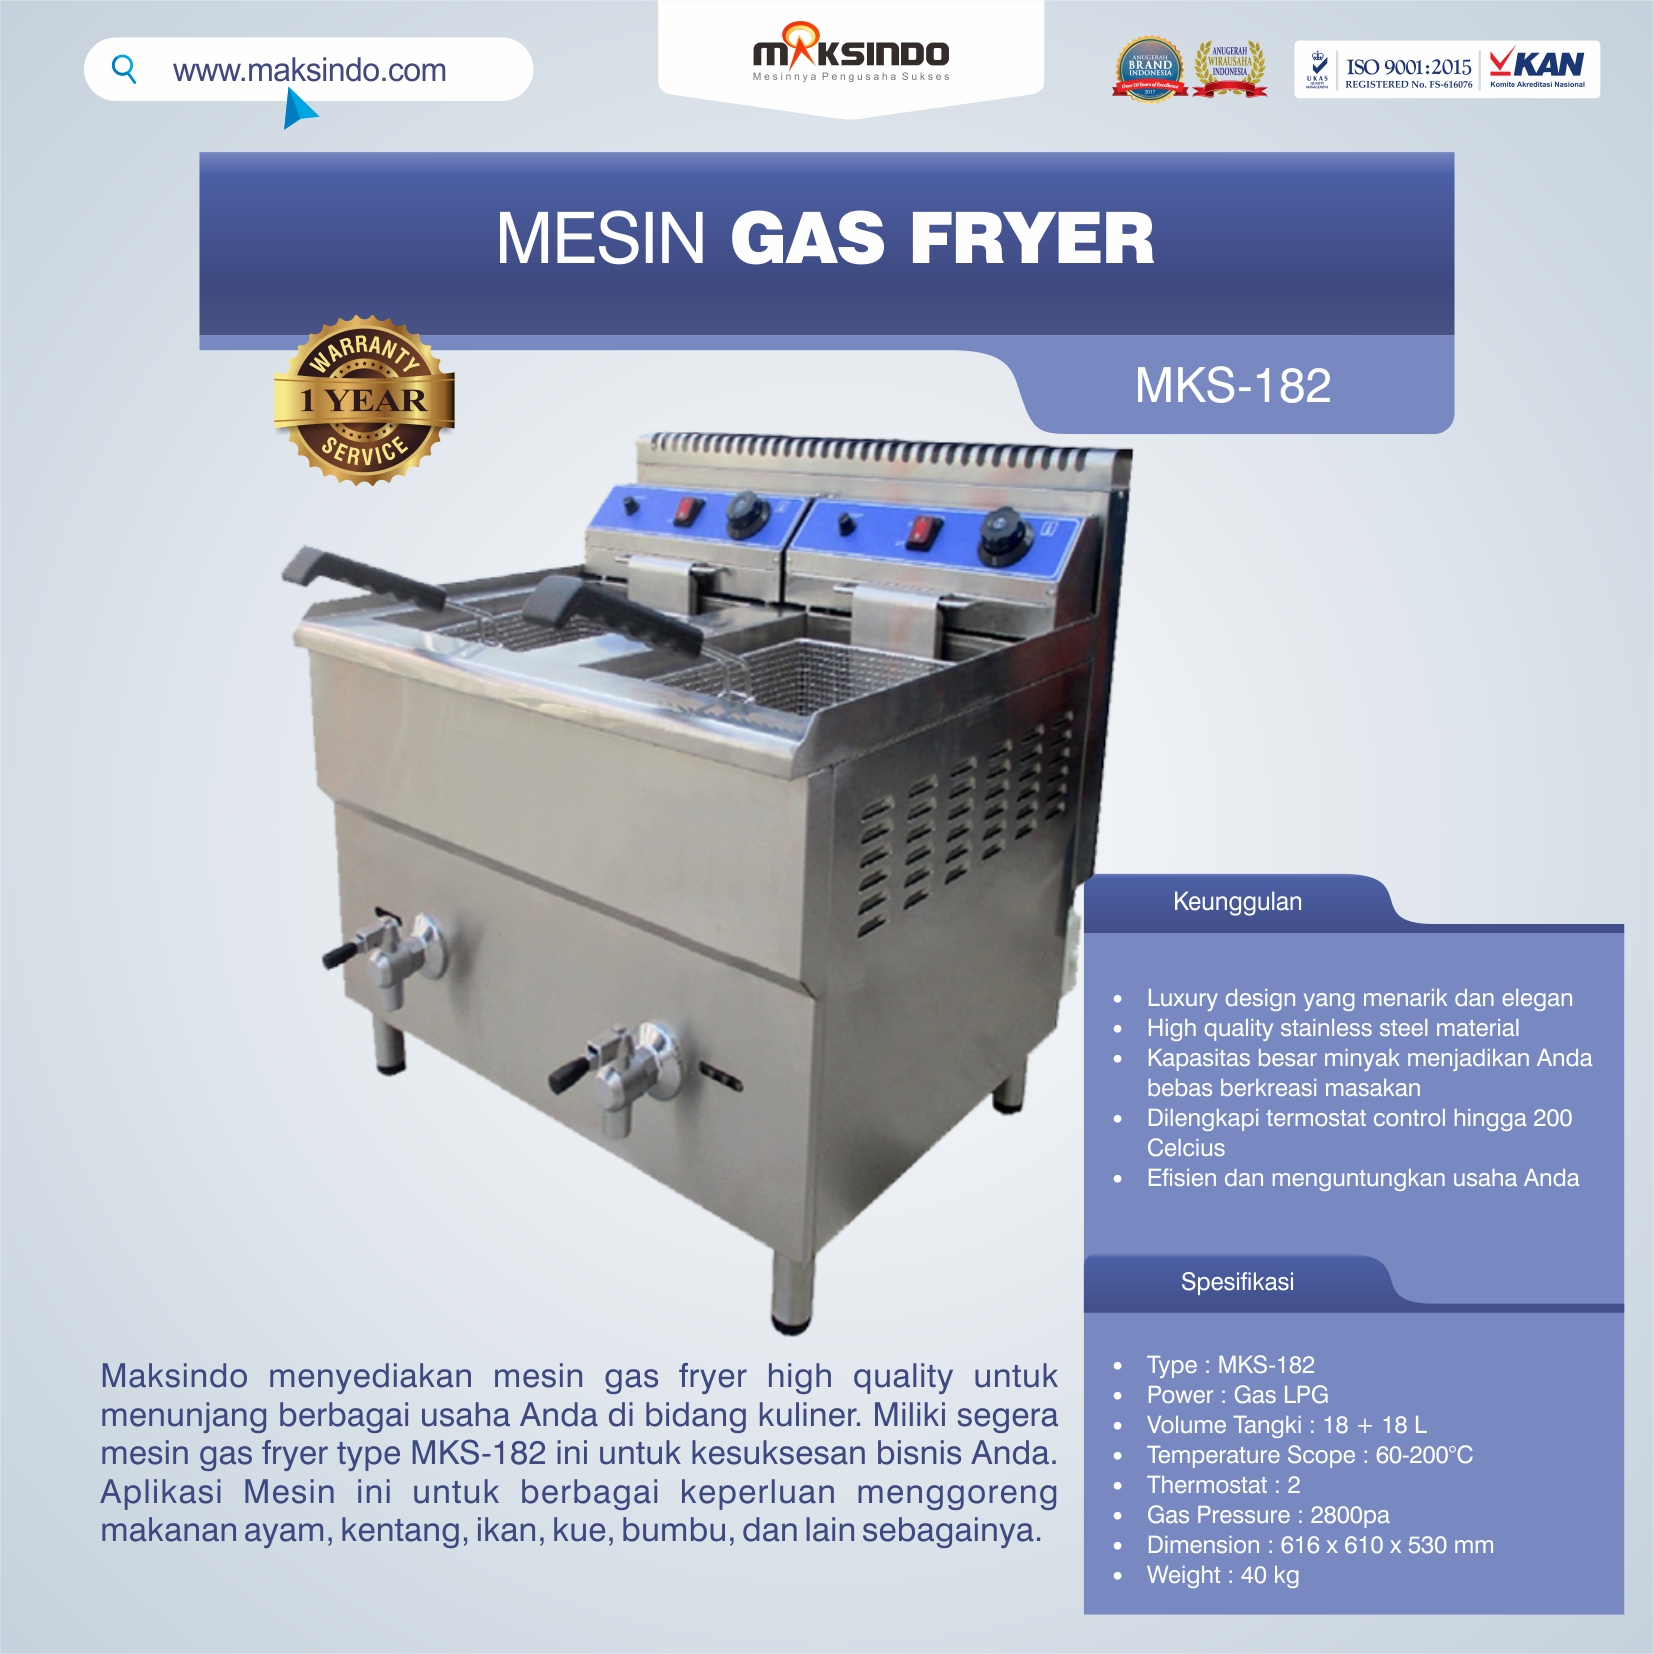 Jual Mesin Gas Fryer 34 Liter (MKS-182) di Blitar